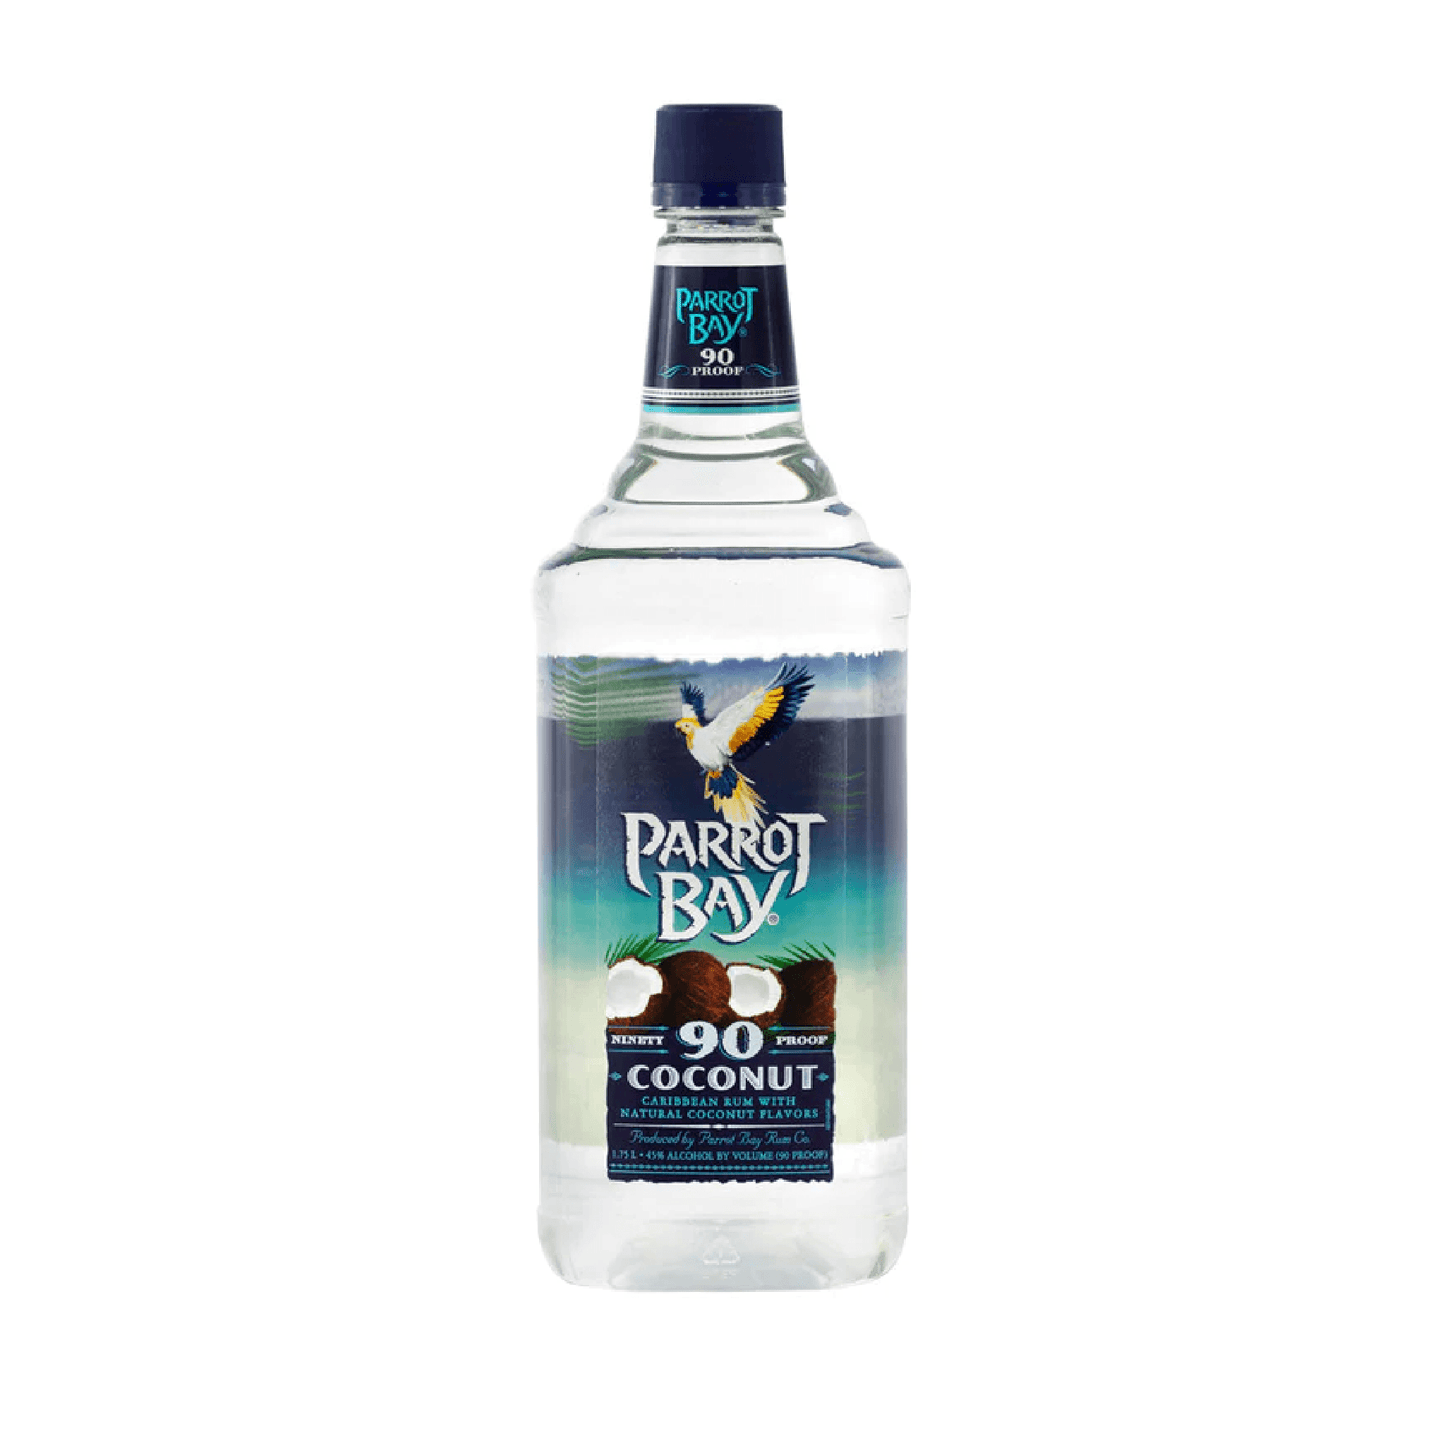 Parrot Bay Coconut Rum 90 Proof - Liquor Geeks